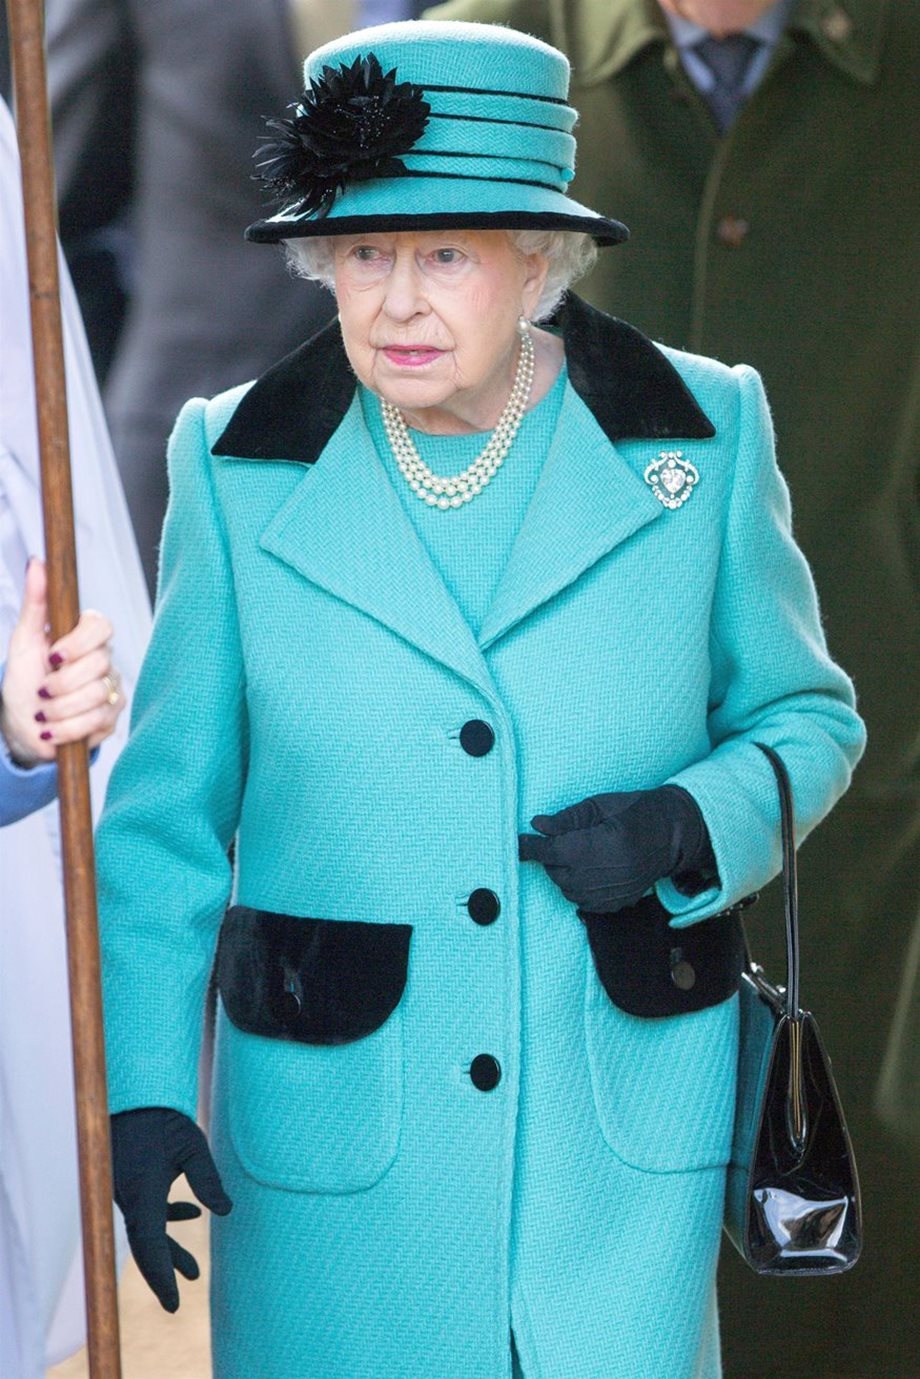 Ακυρώνει δημόσιες εμφανίσεις η βασίλισσα Ελισάβετ λόγω κορονοϊού